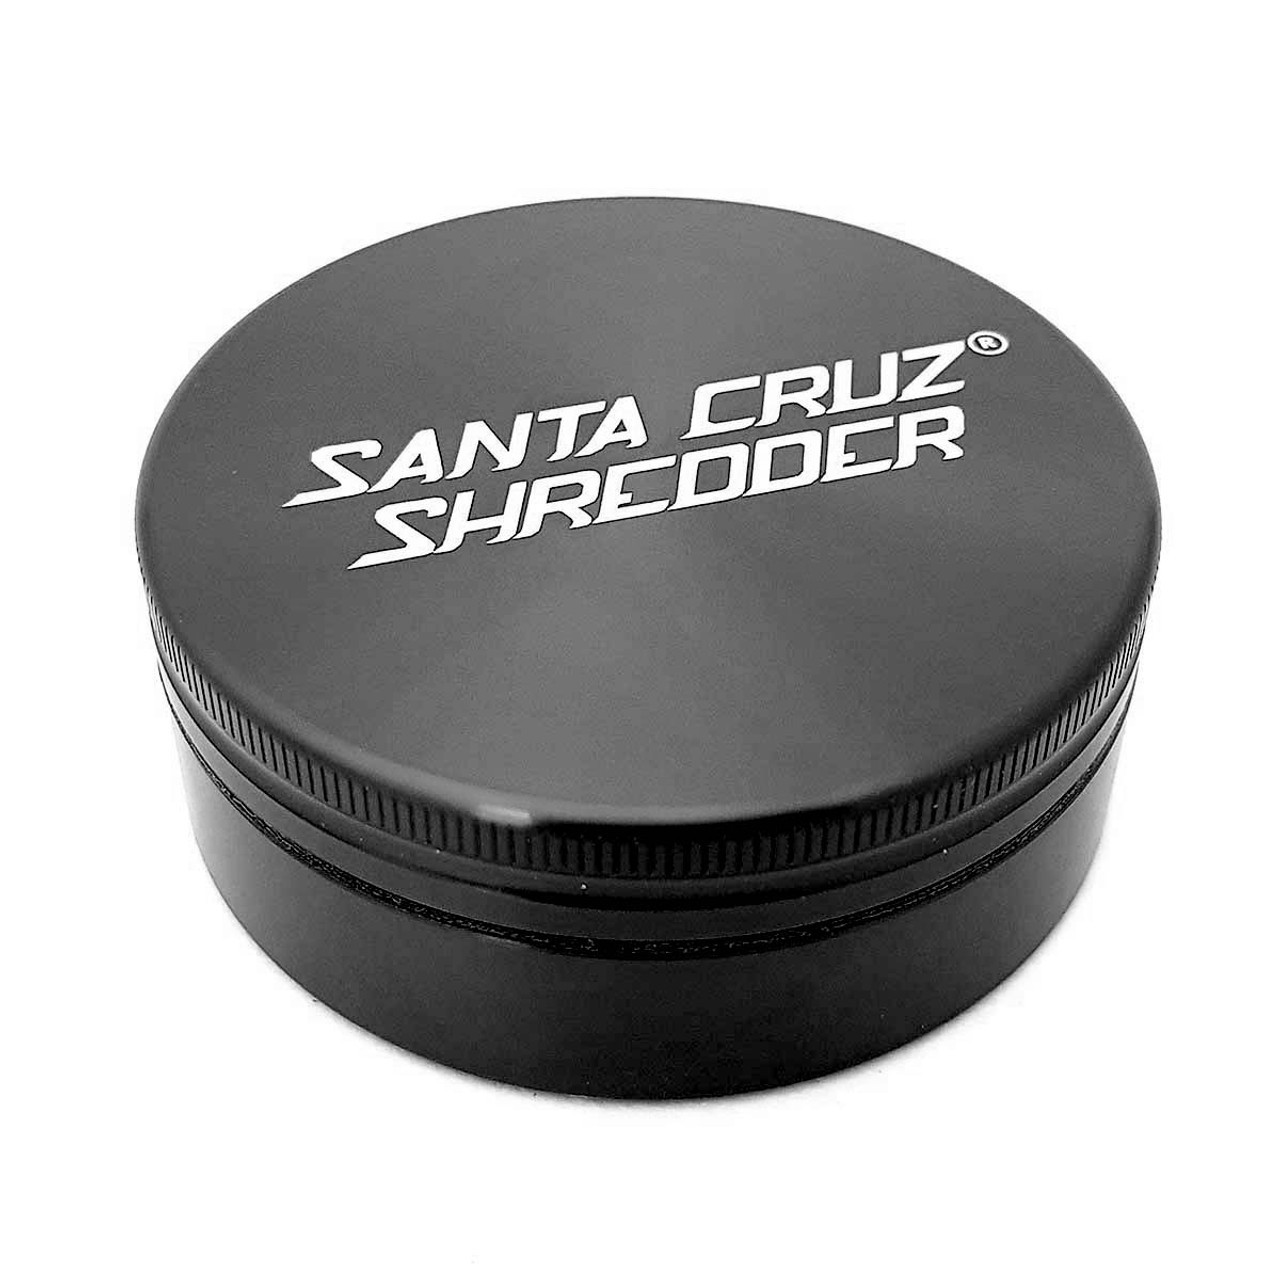 Dvoudílná drtička Santa Cruz Shredder, 70mm, černá matná